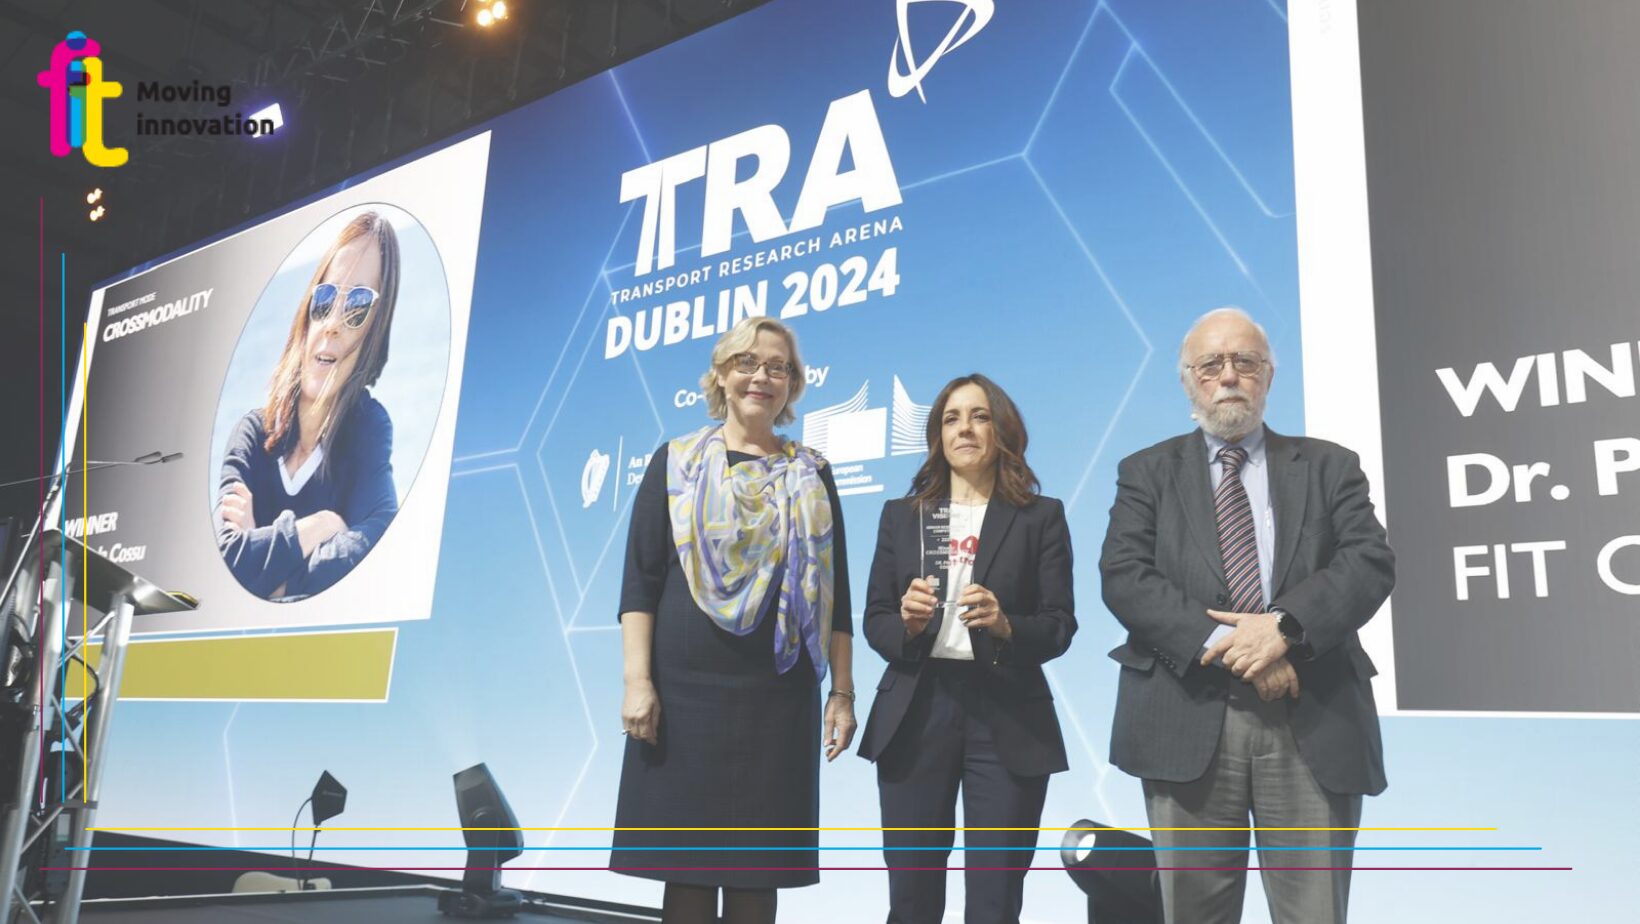 Un prestigioso premio europeo per Paola Cossu, CEO FIT! Ha vinto il Concorso TRA VISION come miglior Ricercatore Senior per la Crossmodalità